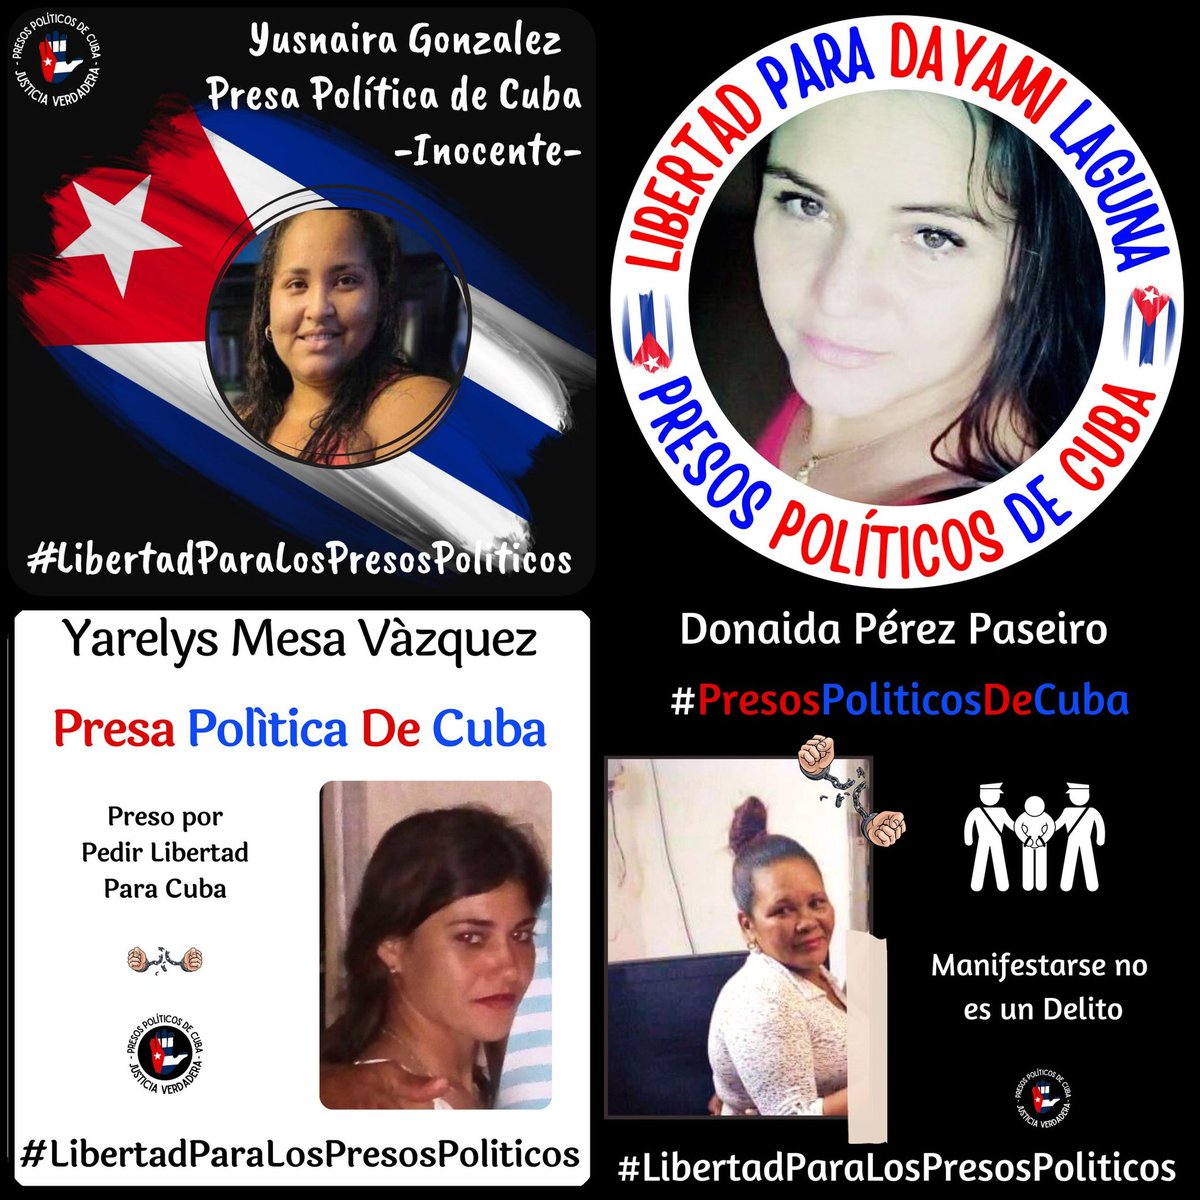 #Twittazo por la Libertad de los #PresosDeCastro. No dejemos de alzar nuestras voces hasta que se haga Justicia Verdadera. 
.
.
.
#HastaQueSeanLibres
#PresosPoliticosDeCuba
#LibertadParaLosPresosPoliticos